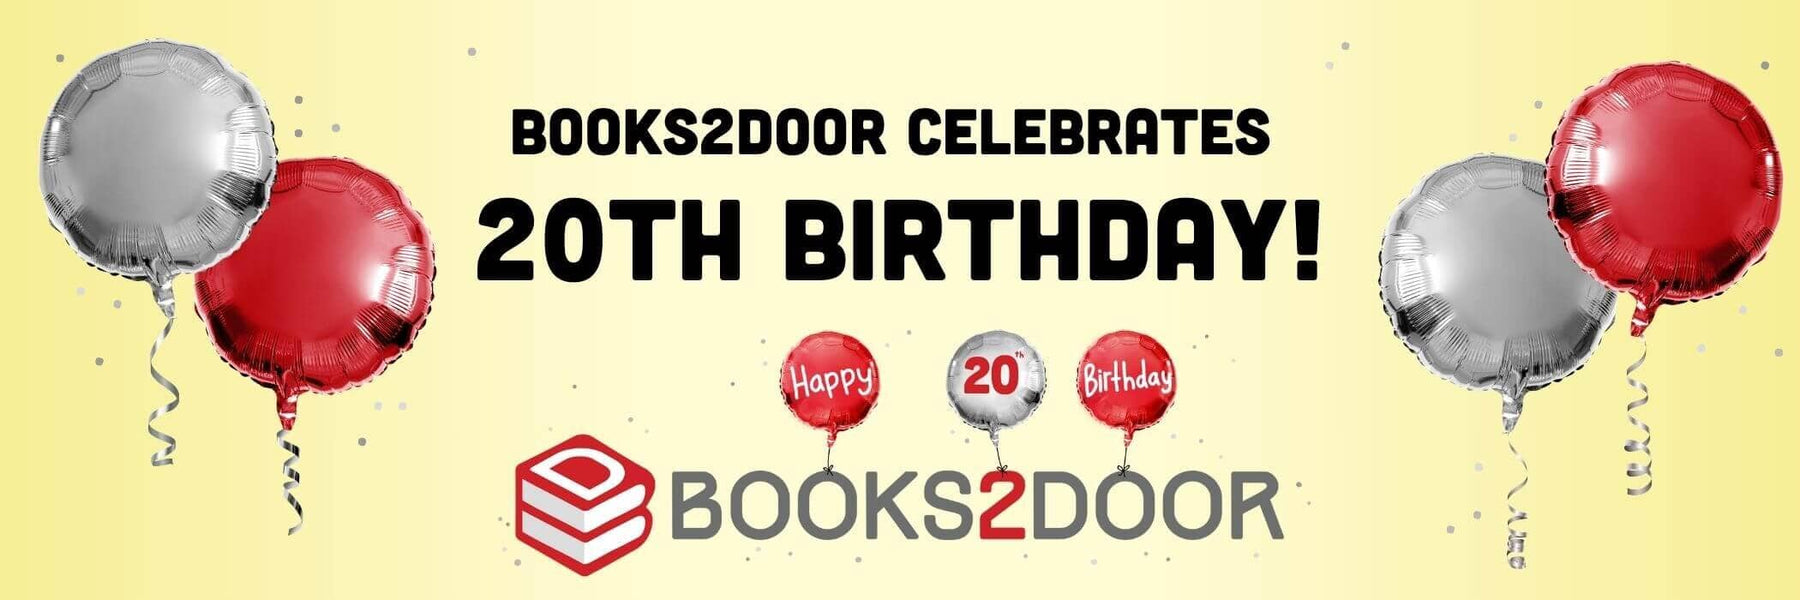 Books2Door Celebrates its 20th Birthday!